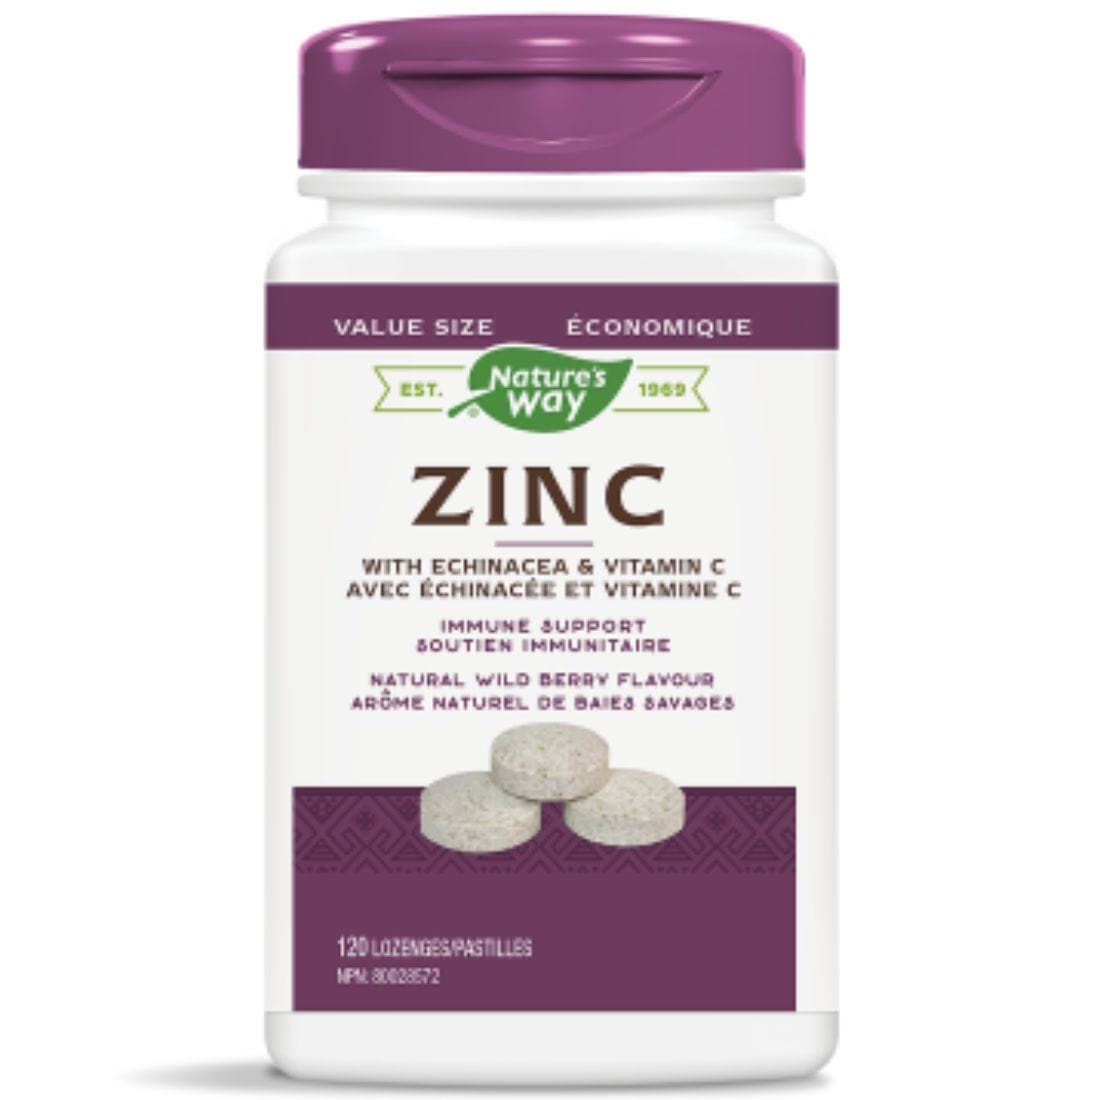 Nature's Way Zinc Lozenges 23mg with Echinacea & Vitamin C